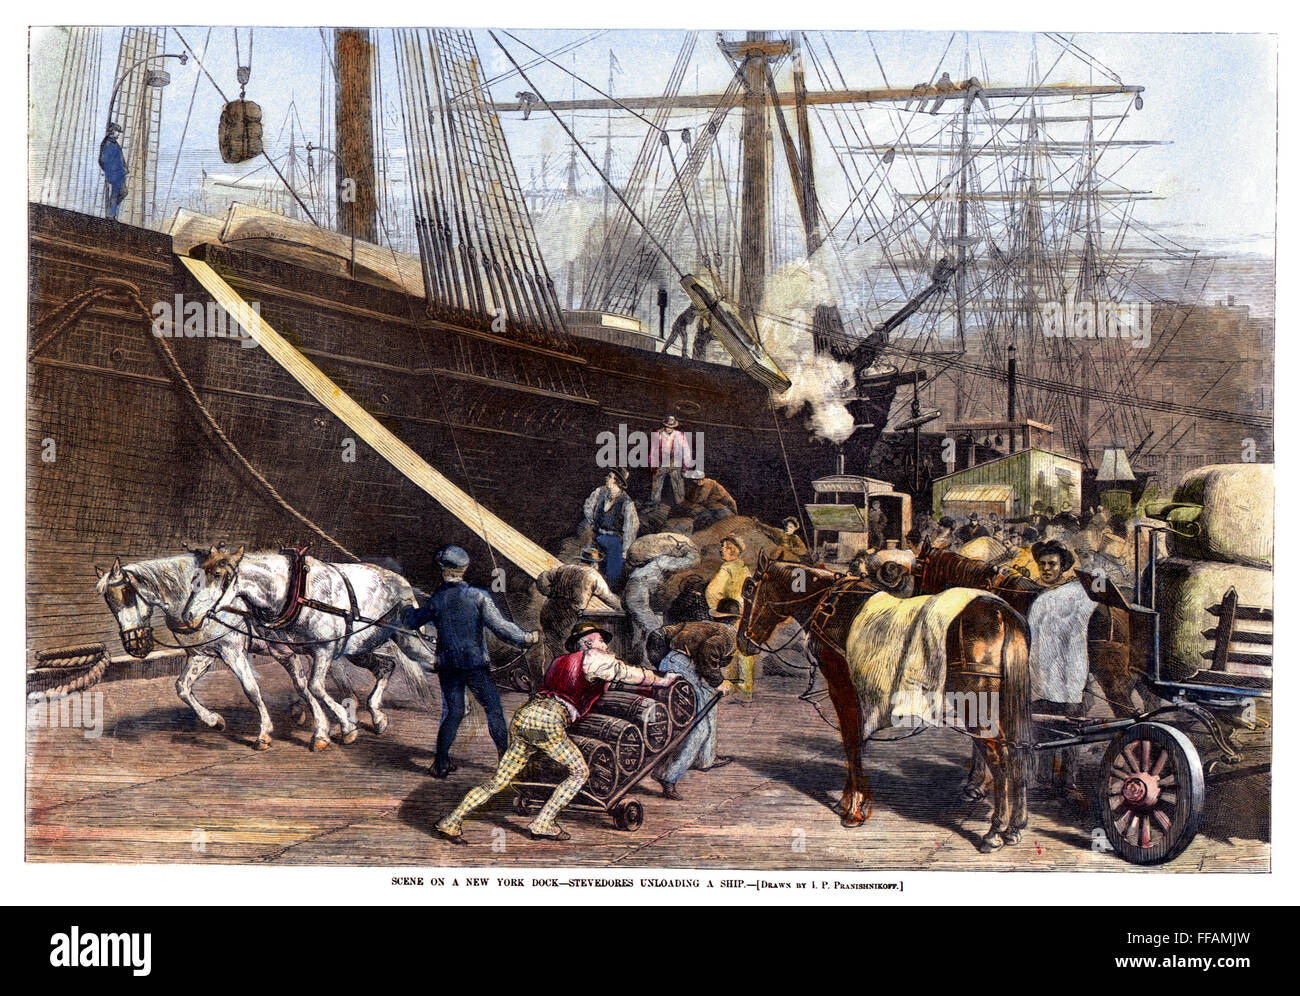 Les quais de la ville de New York, 1877. /NStevedores le déchargement d'un navire à un quai à New York, 1877. La gravure sur bois à partir d'un journal américain contemporain. Banque D'Images